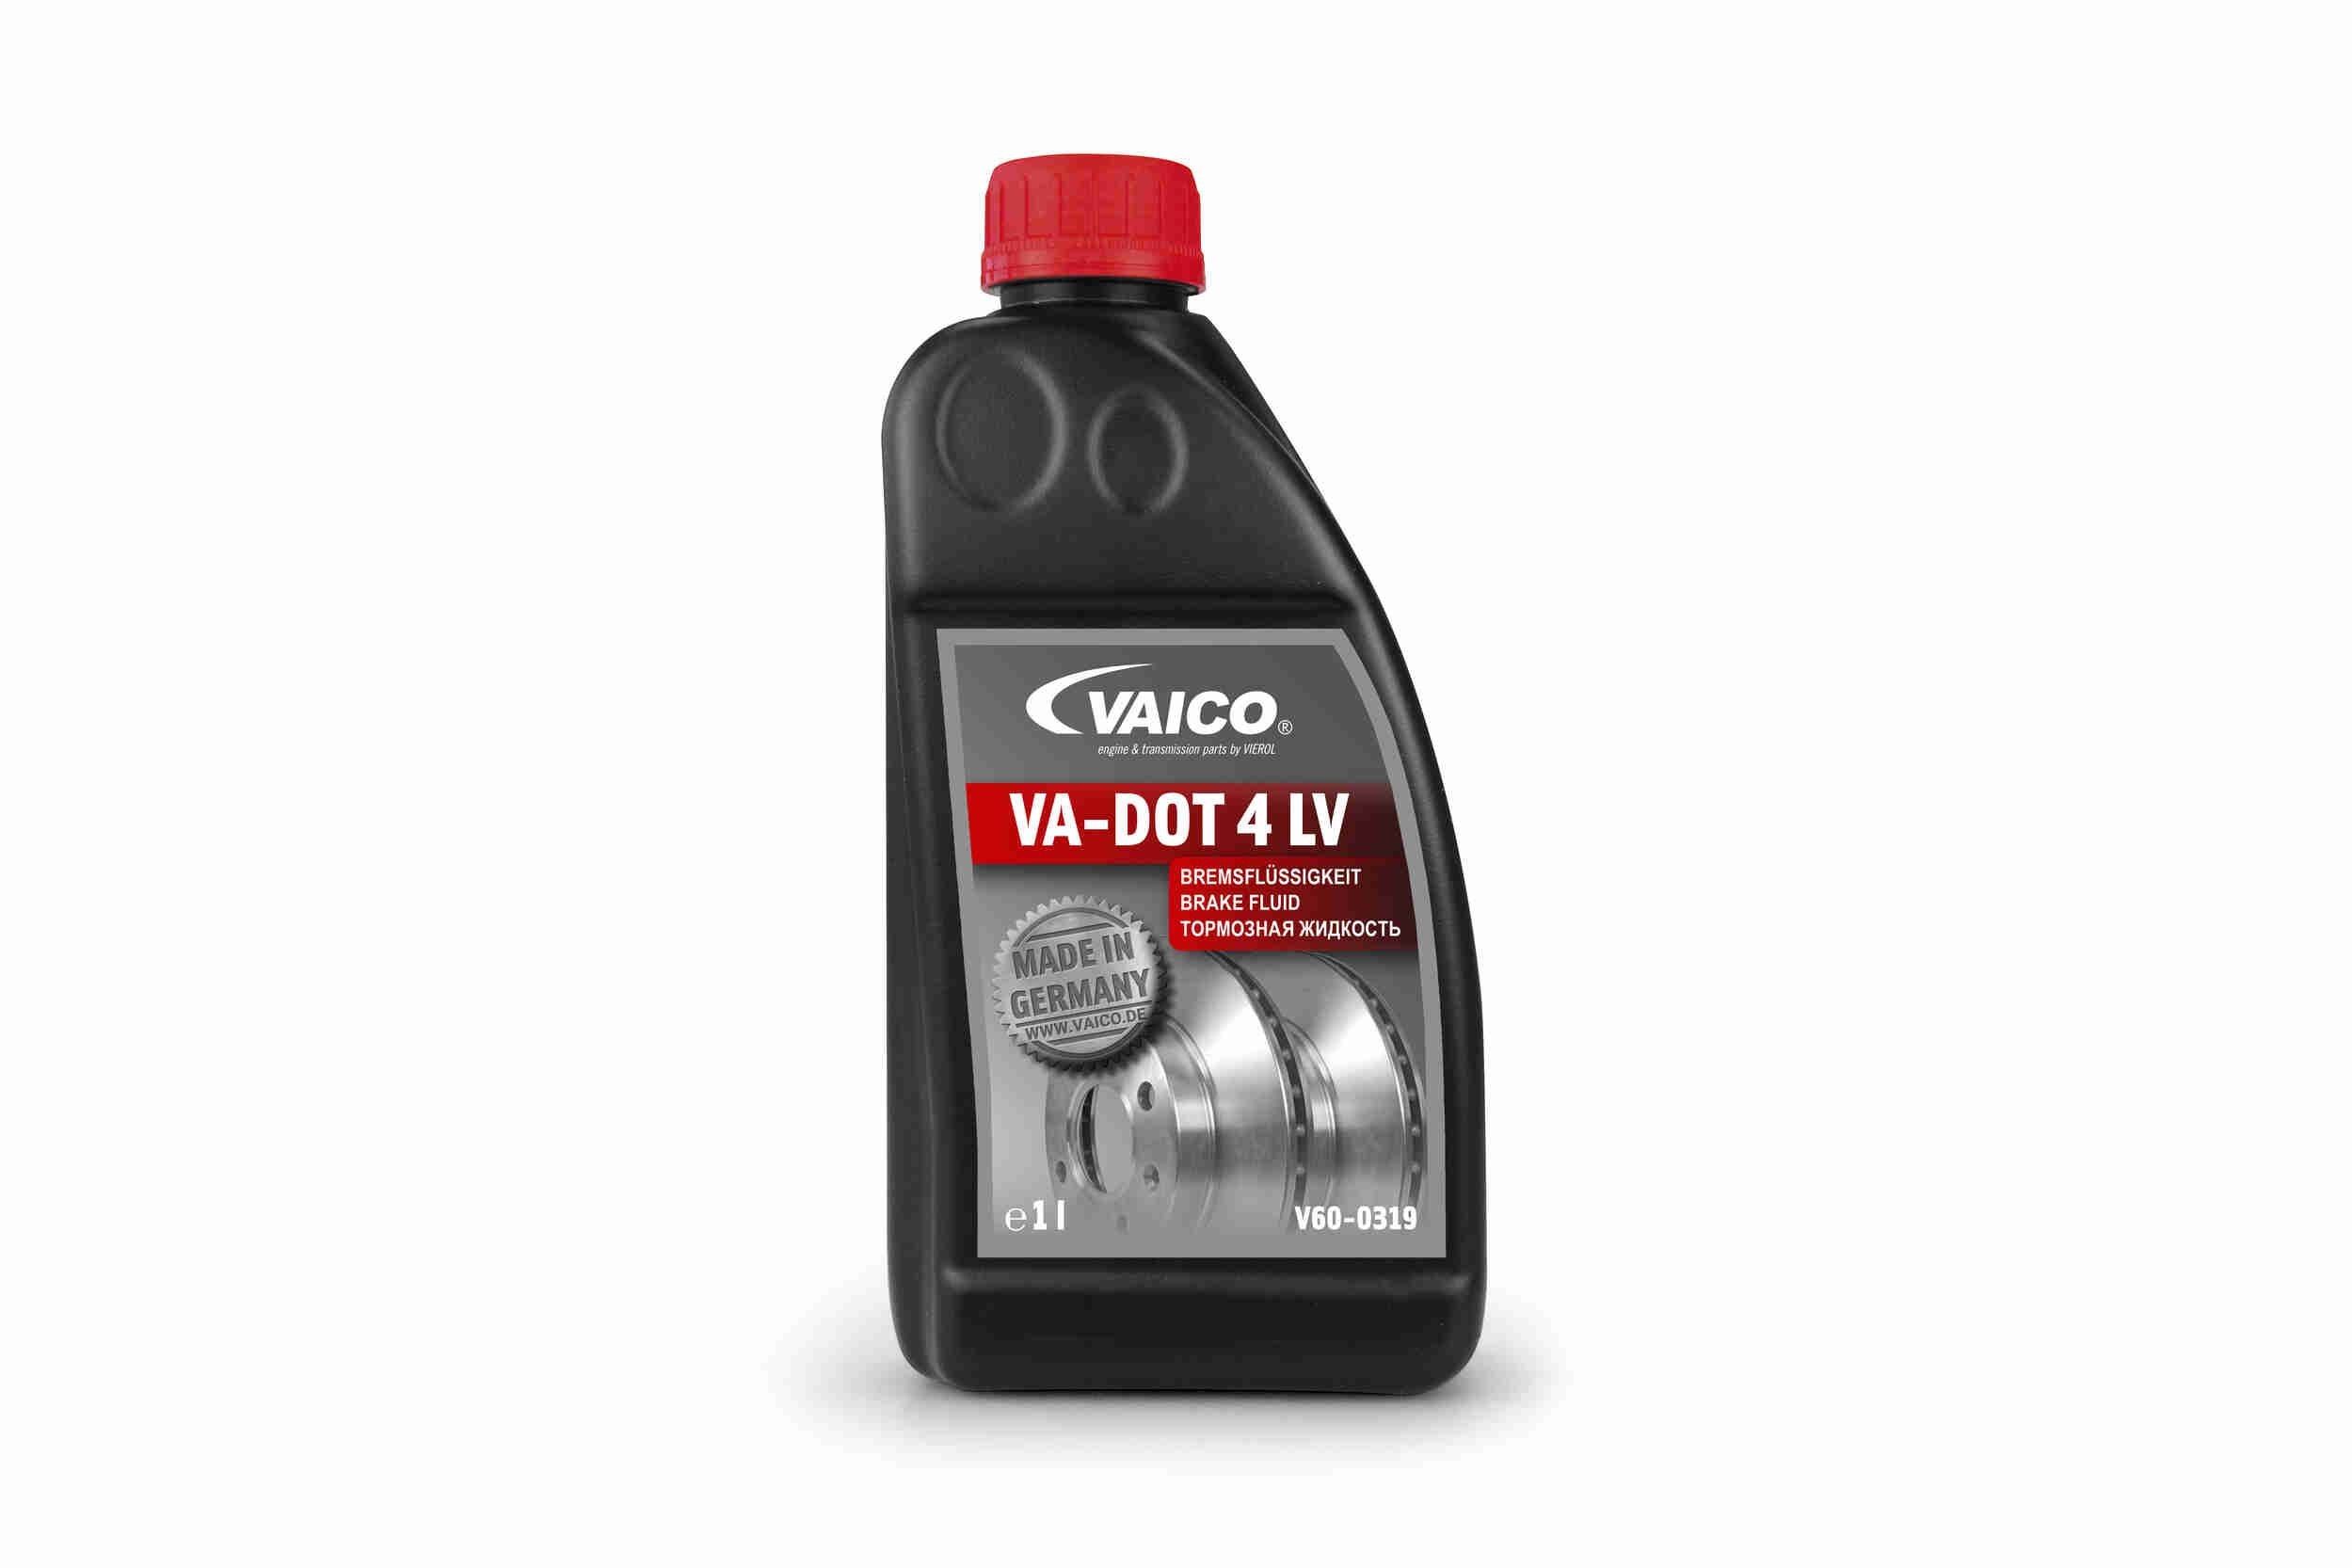 VAICO Brake oil W213 new V60-0319